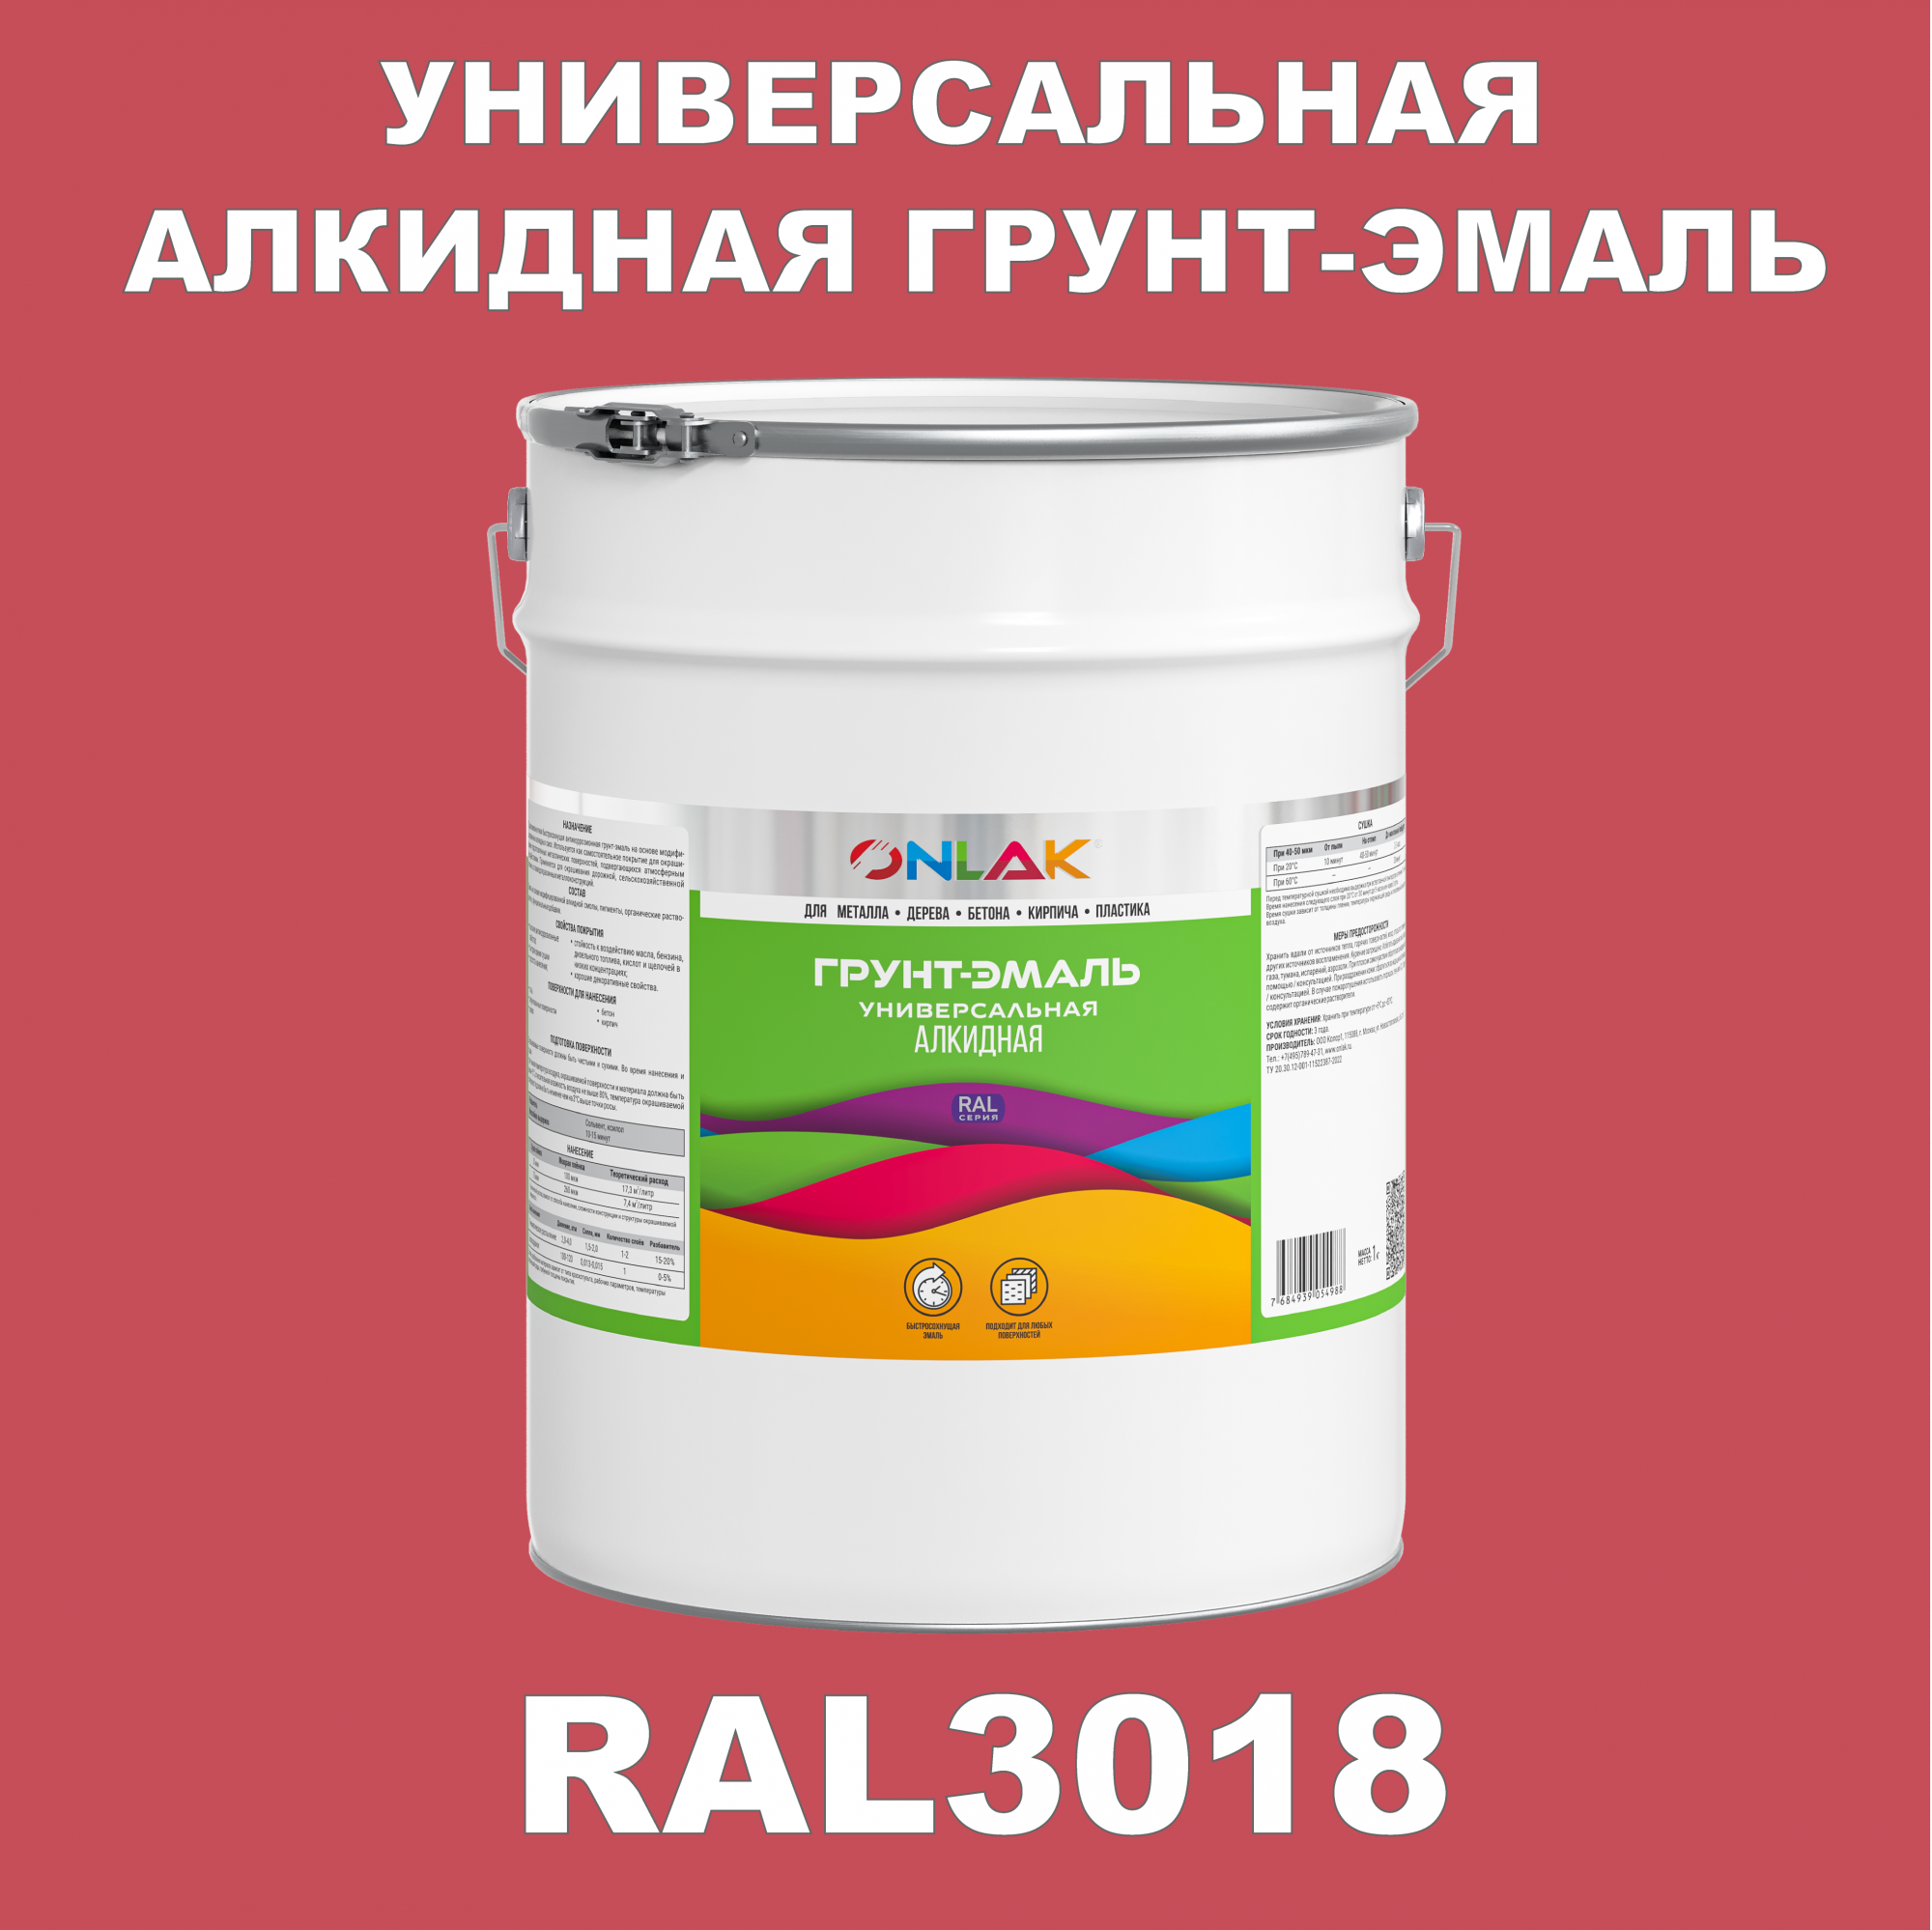 Грунт-эмаль ONLAK 1К RAL3018 антикоррозионная алкидная по металлу по ржавчине 20 кг грунт эмаль yollo по ржавчине алкидная серая 0 9 кг